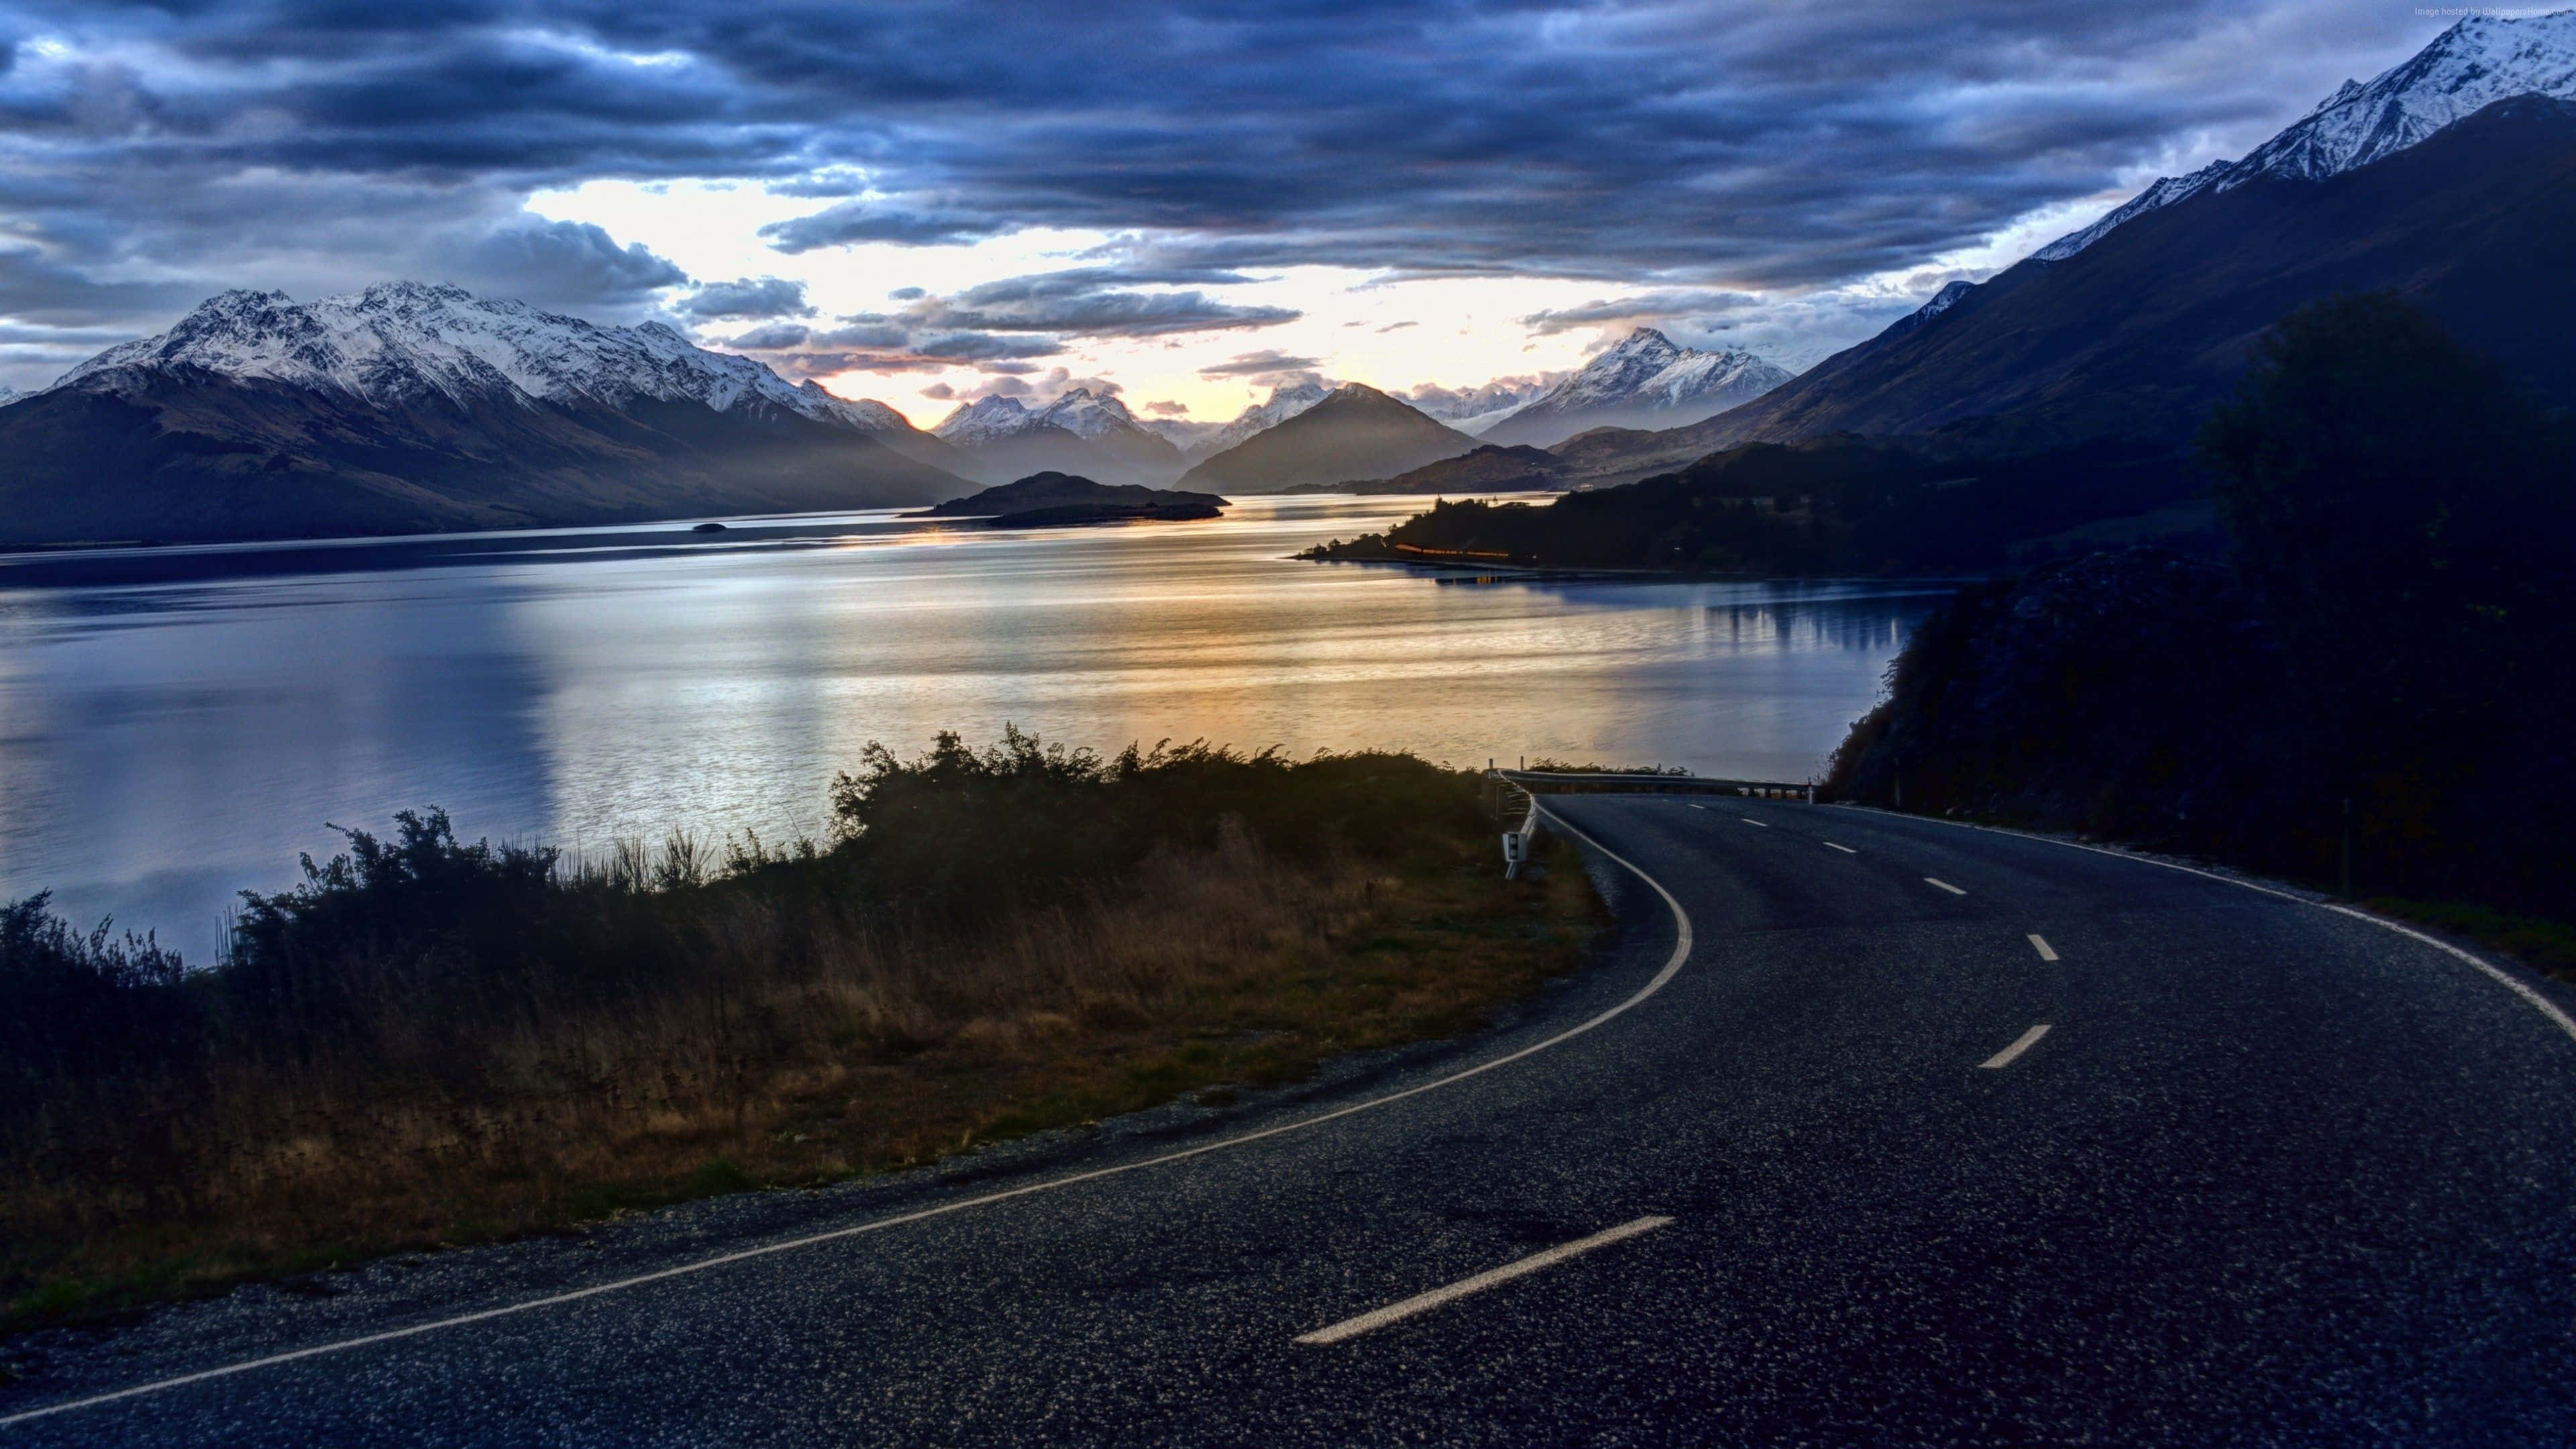 Nyddet Bedste Af New Zealands Naturlige Skønhed.